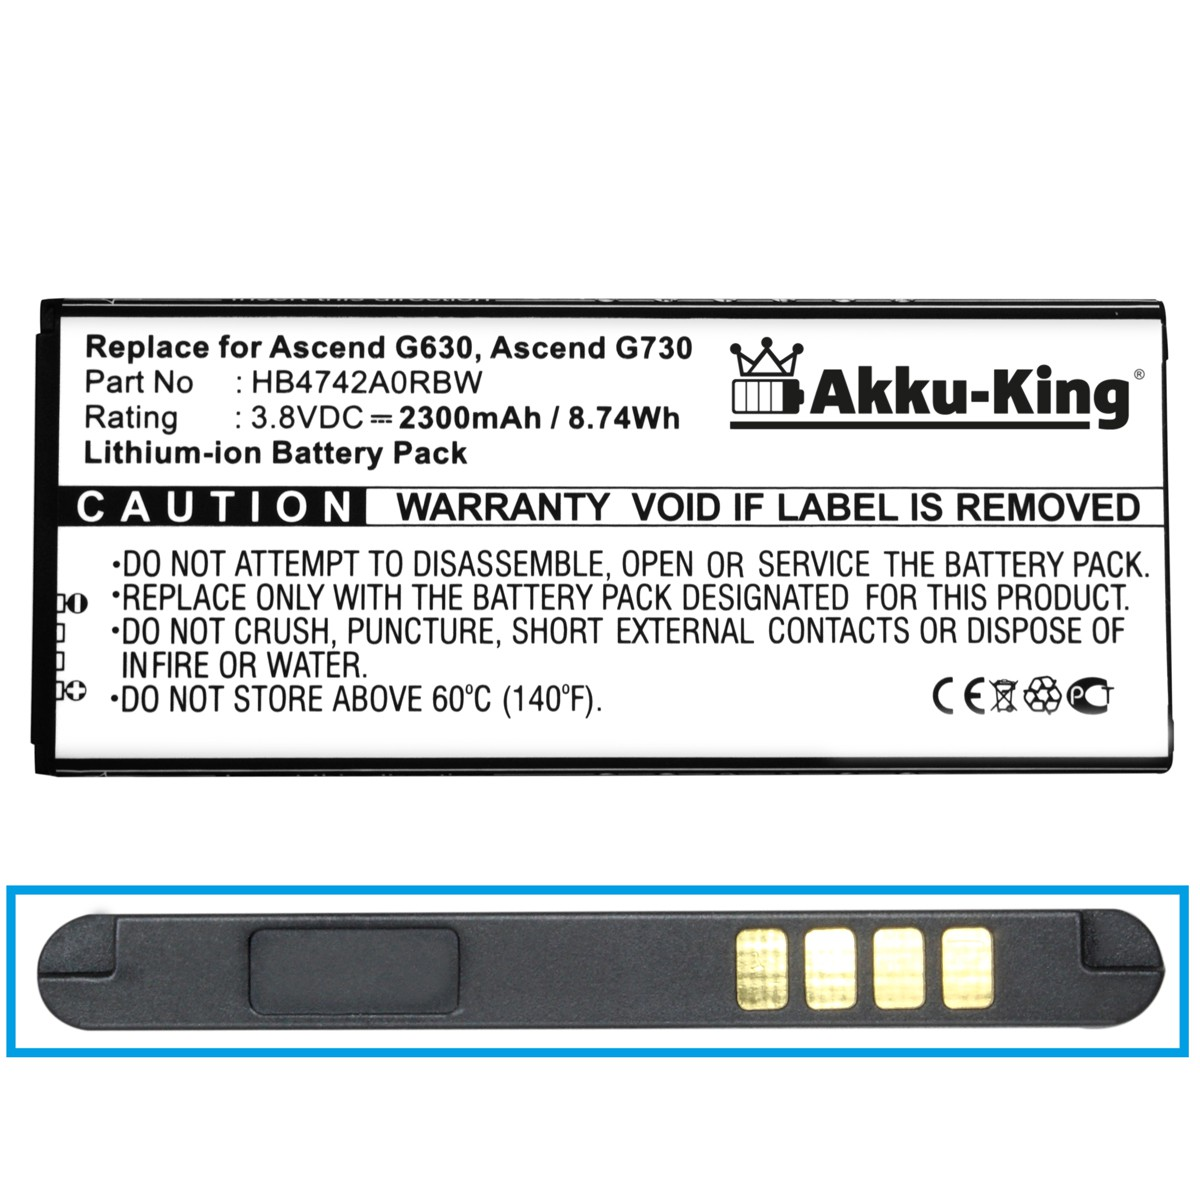 AKKU-KING Akku kompatibel mit Huawei Handy-Akku, Volt, HB4742A0RBC 3.8 2300mAh Li-Ion